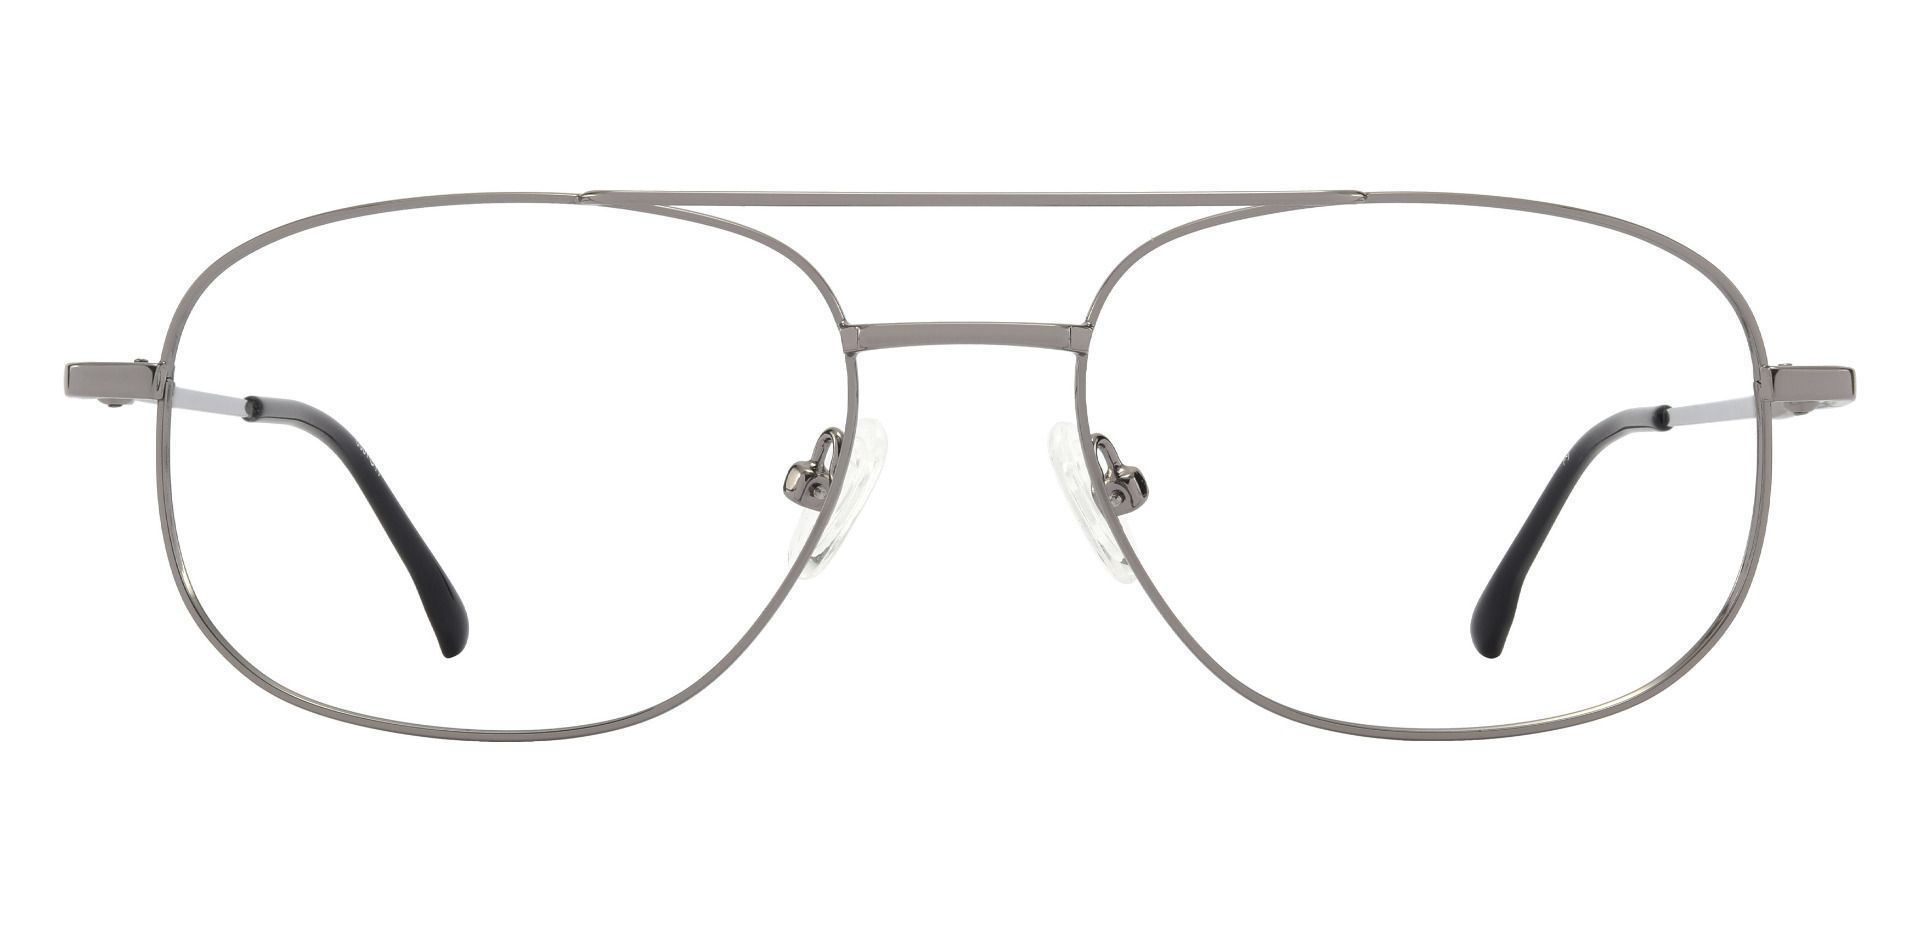 Jamison Aviator Prescription Glasses - Gold | Men's Eyeglasses | Payne ...